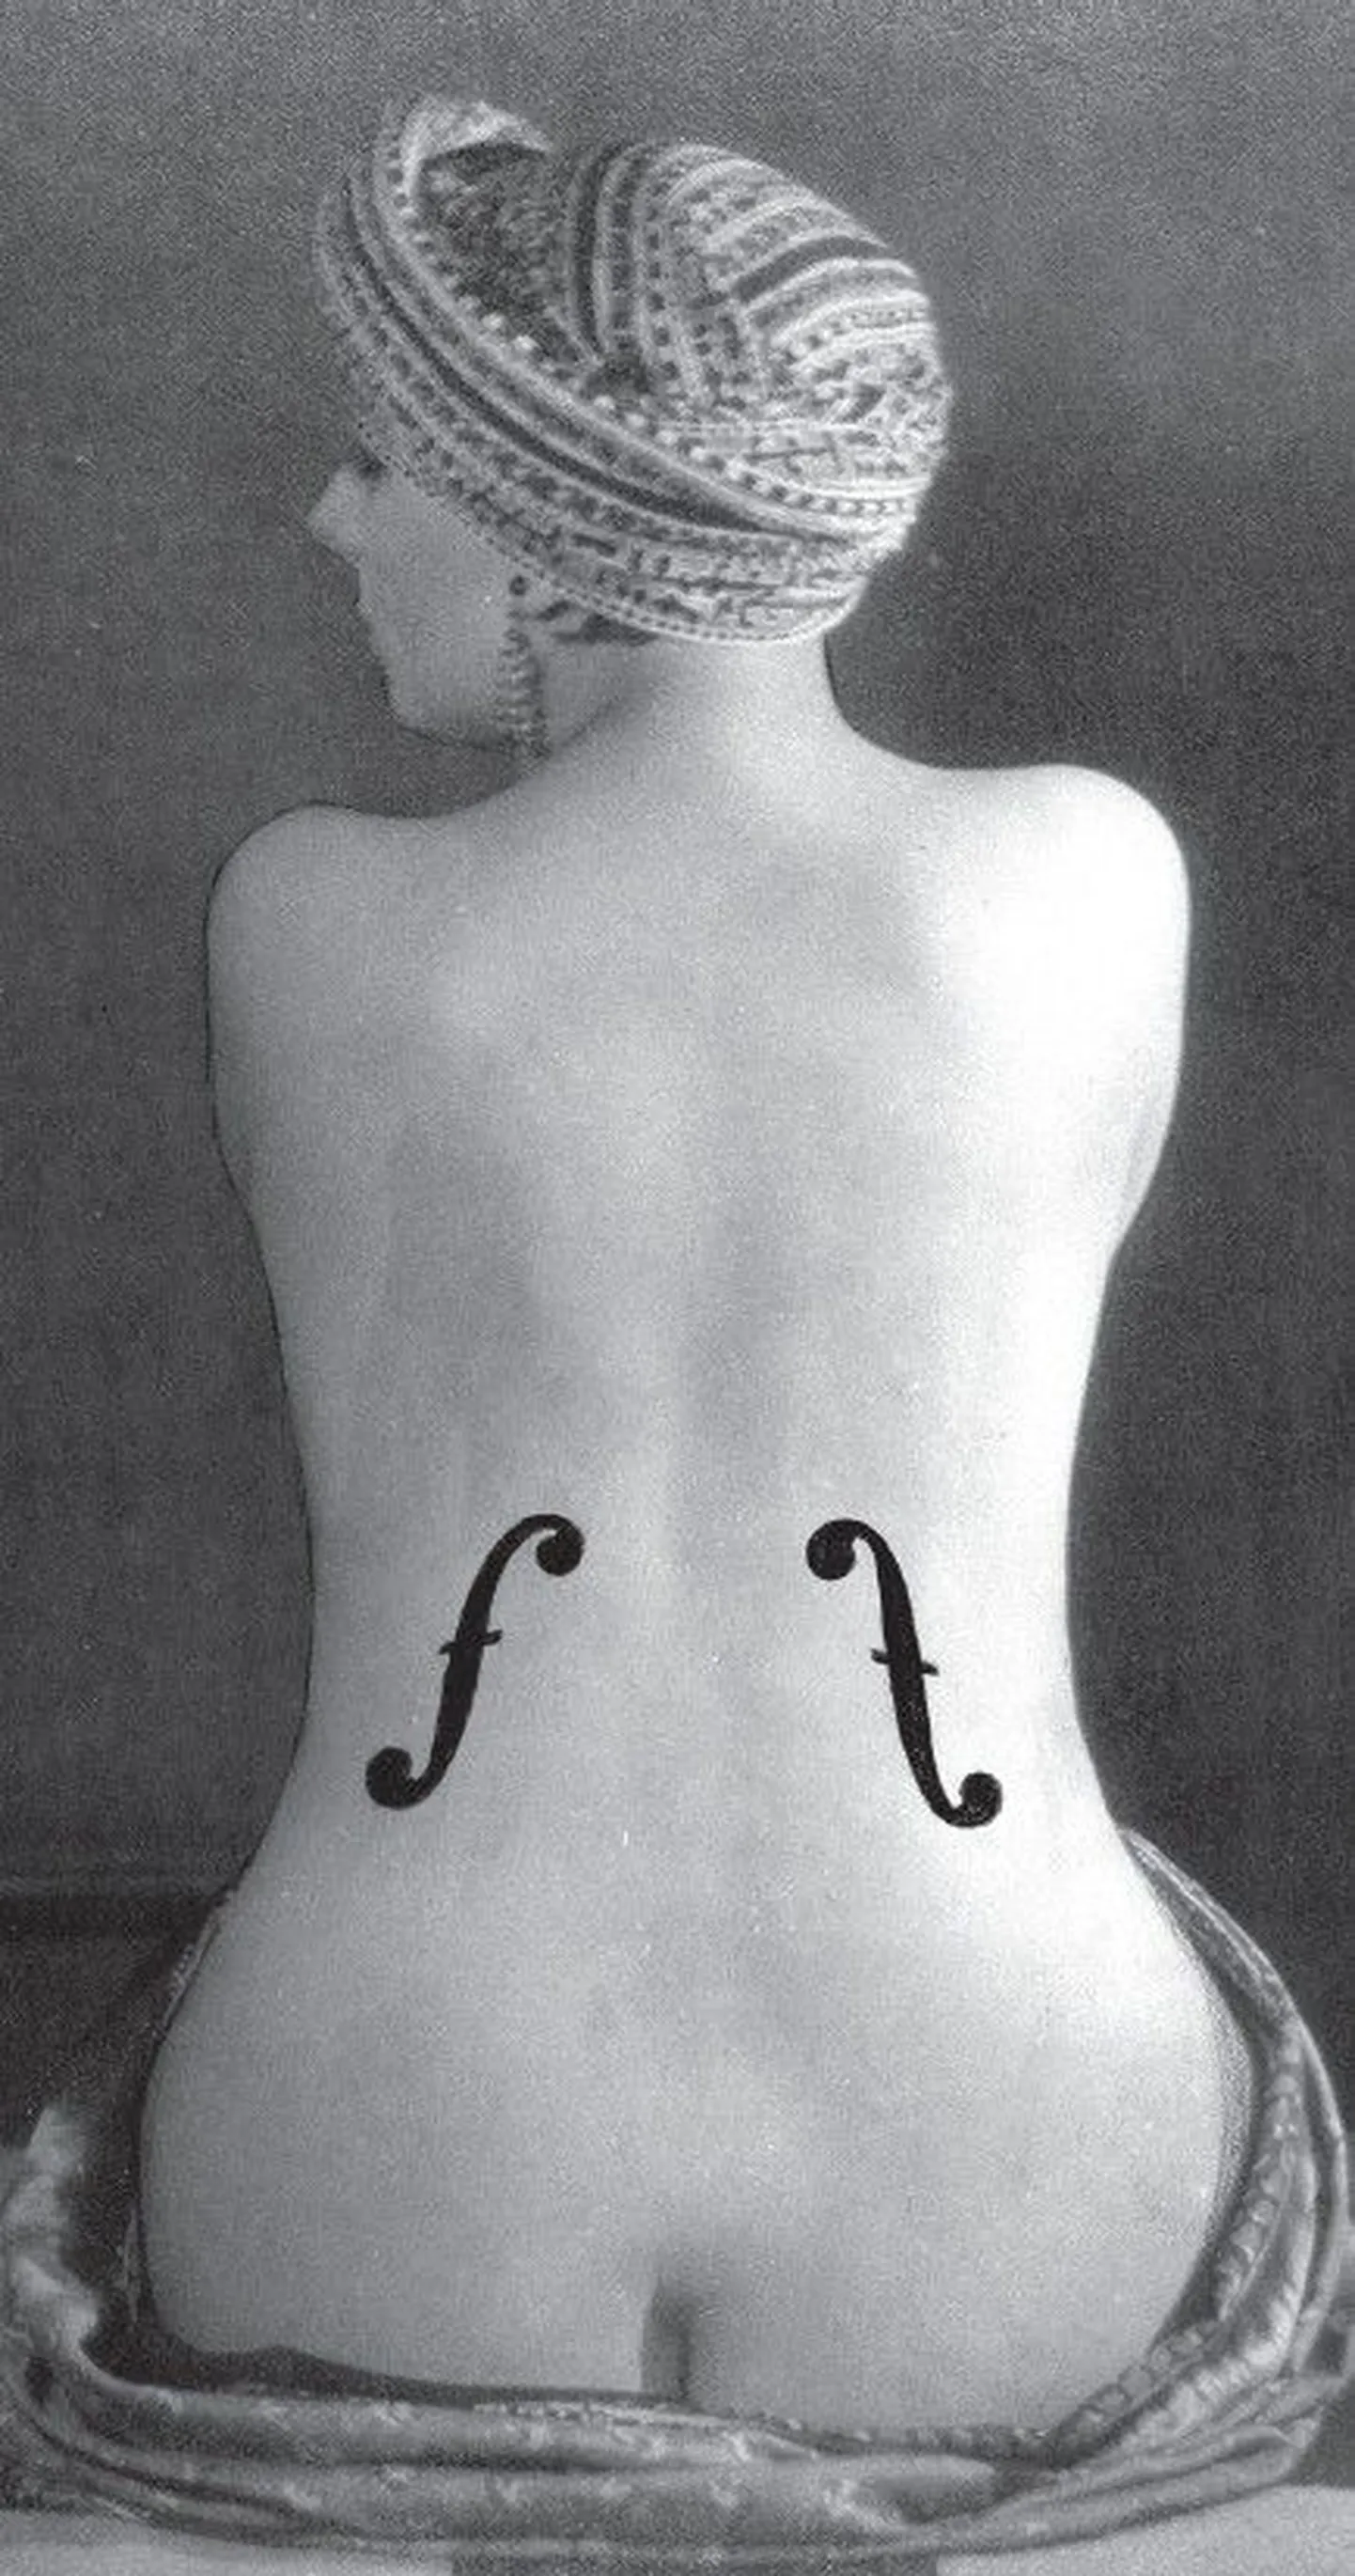 Kumus täna avataval väljapanekul näidatakse Euroopa sürrealistlikku fotokunsti aastail 1922–1947. Teiste seas saab näha ka üht fotokunsti ajaloo tuntumatest töödest – Man Ray «Ingres’i viiulit».